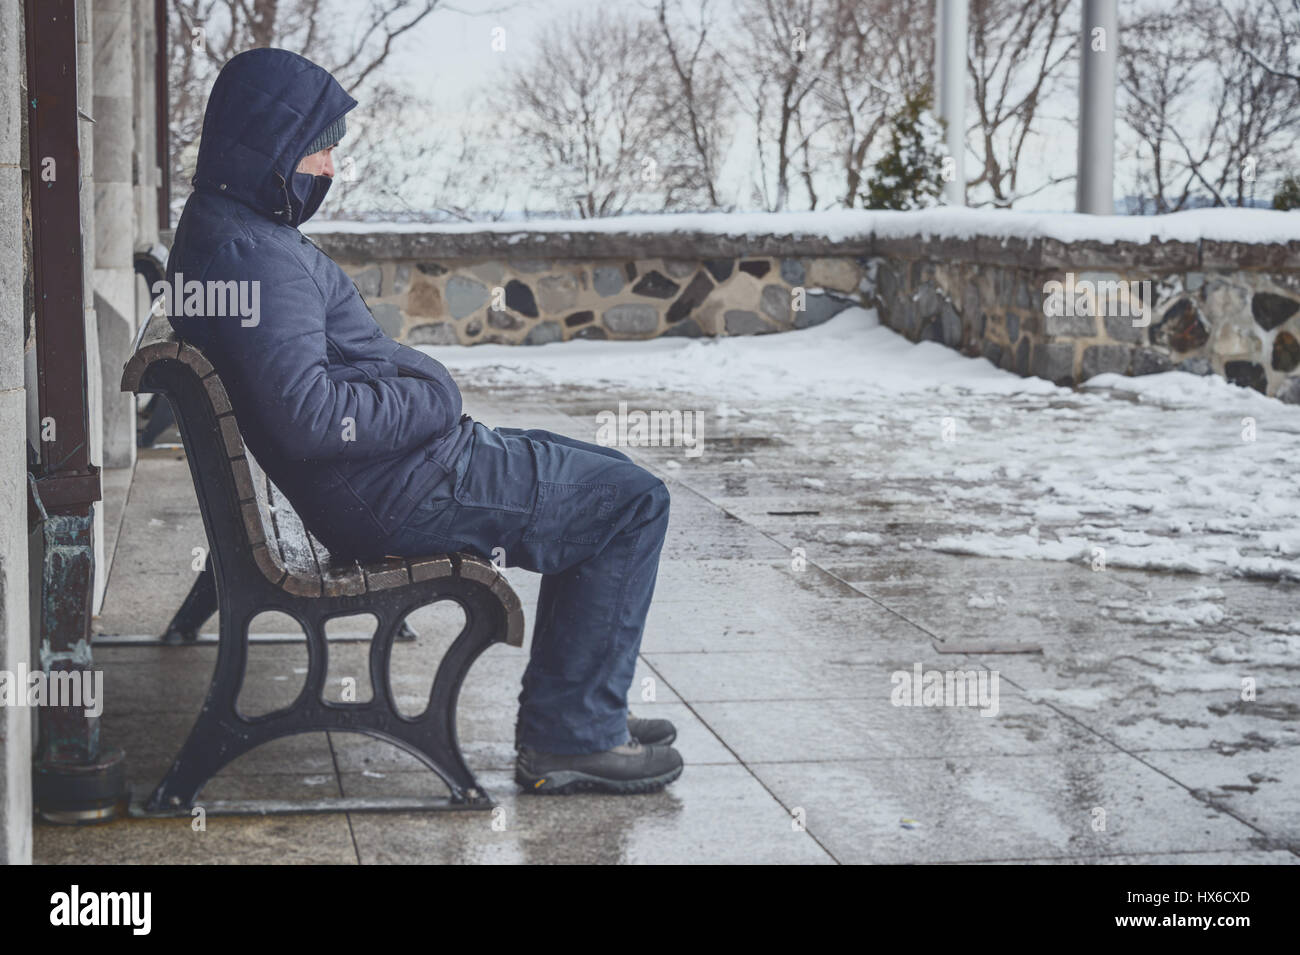 Hombre sentado en un banco en invierno con nieve en el suelo Foto de stock